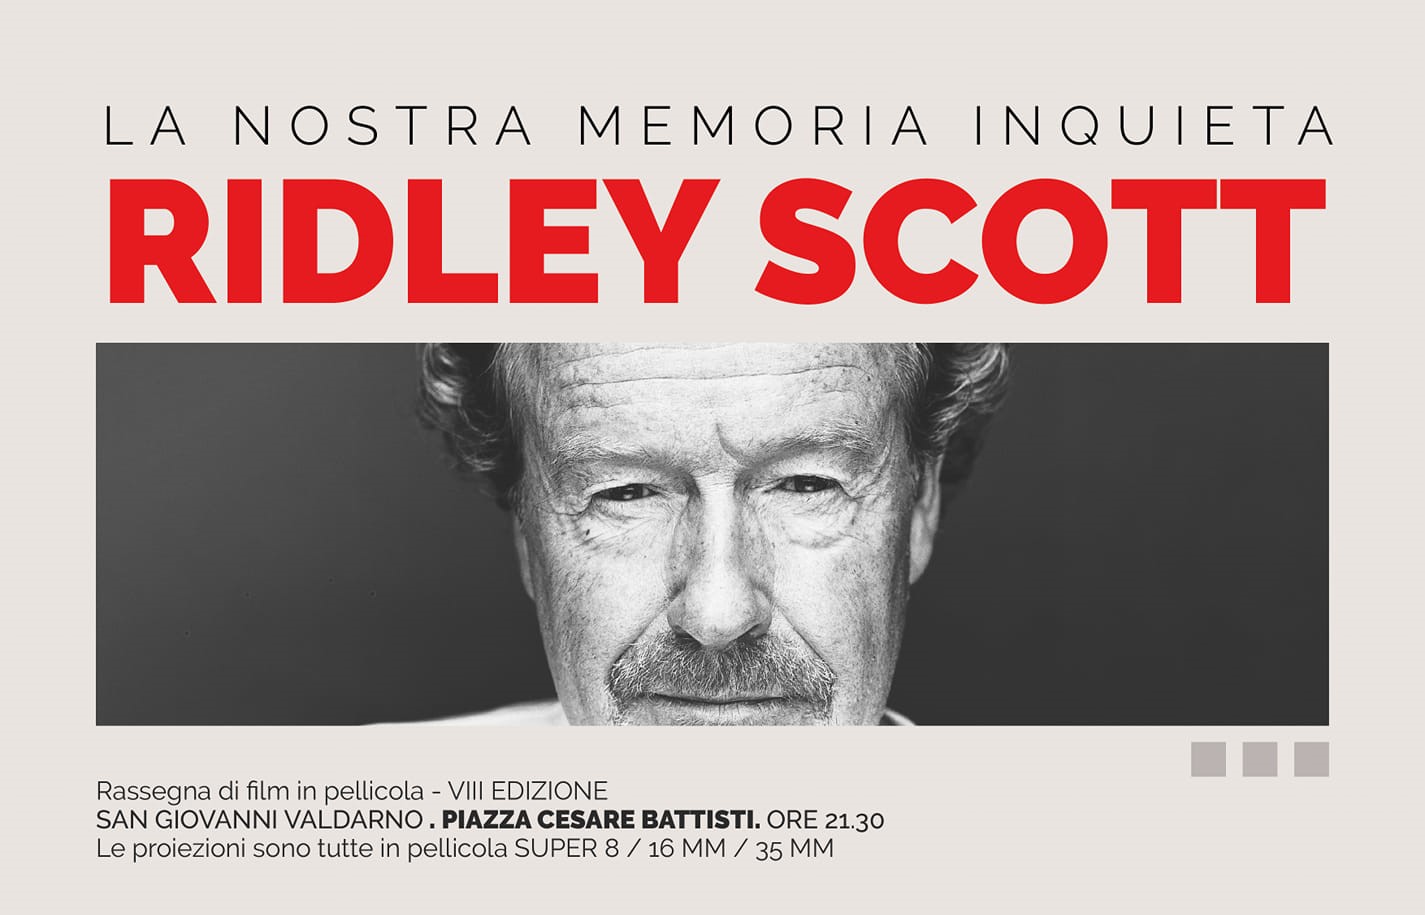 La nostra memoria inquieta, San Giovanni omaggia Ridley Scott